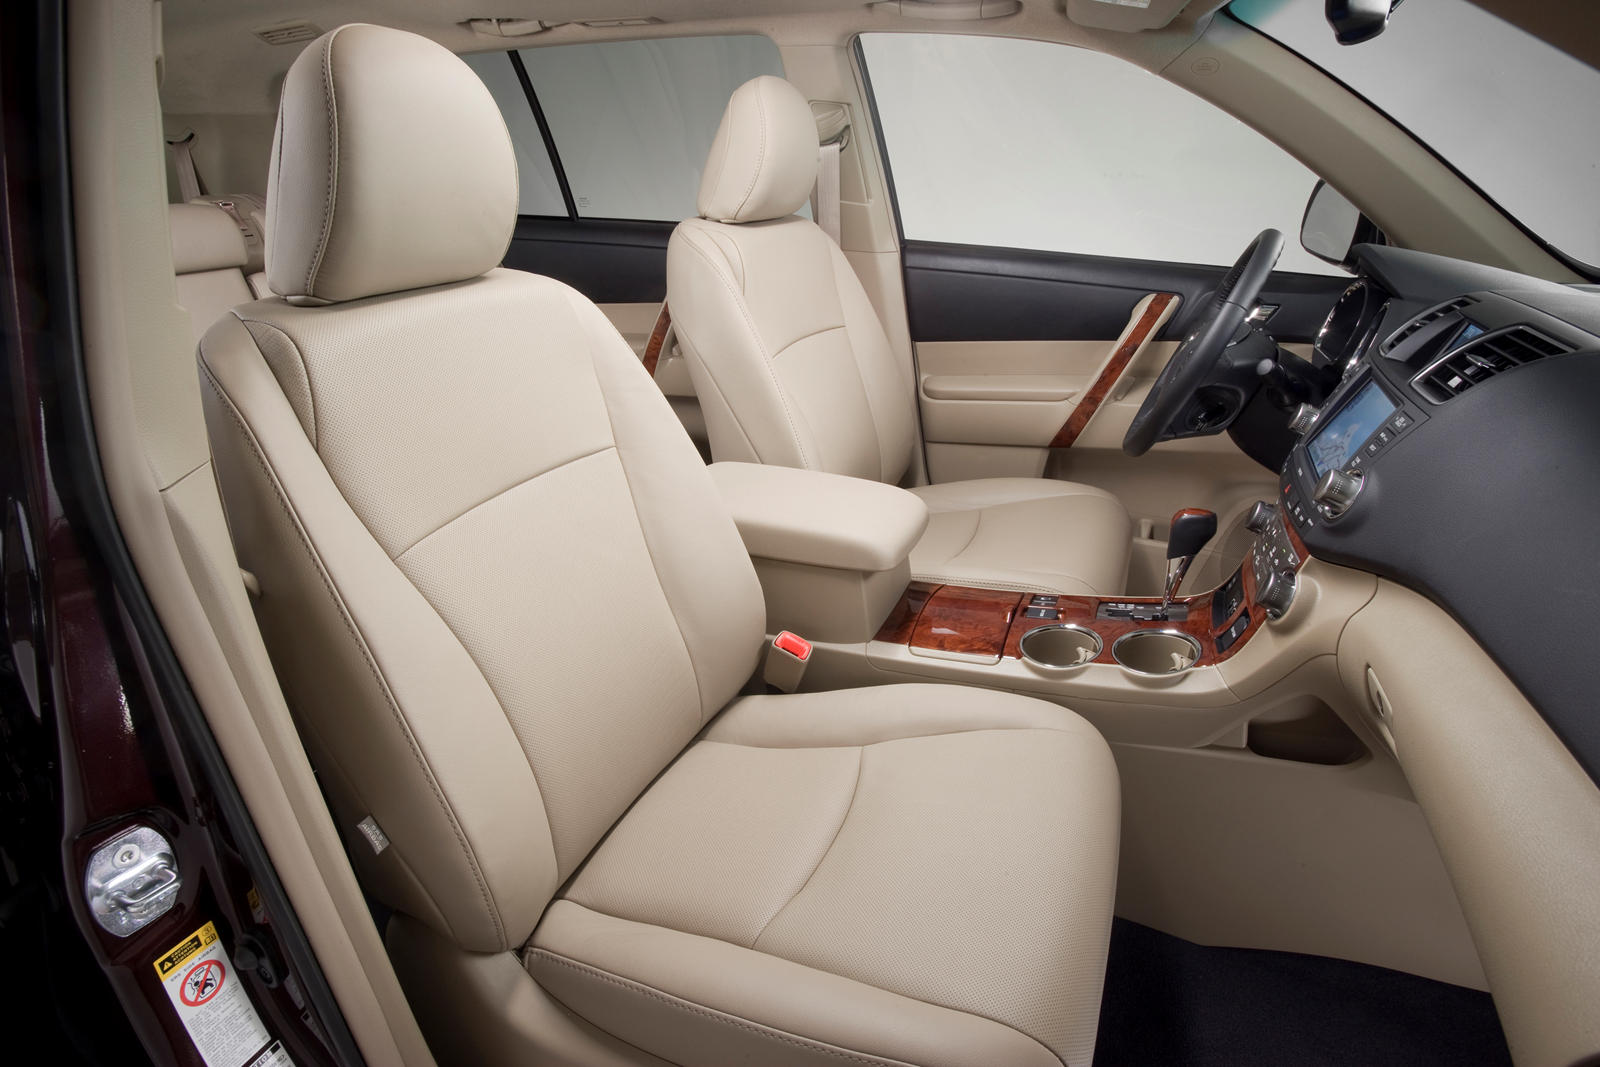 2012 Toyota Highlander Interior Photos | CarBuzz